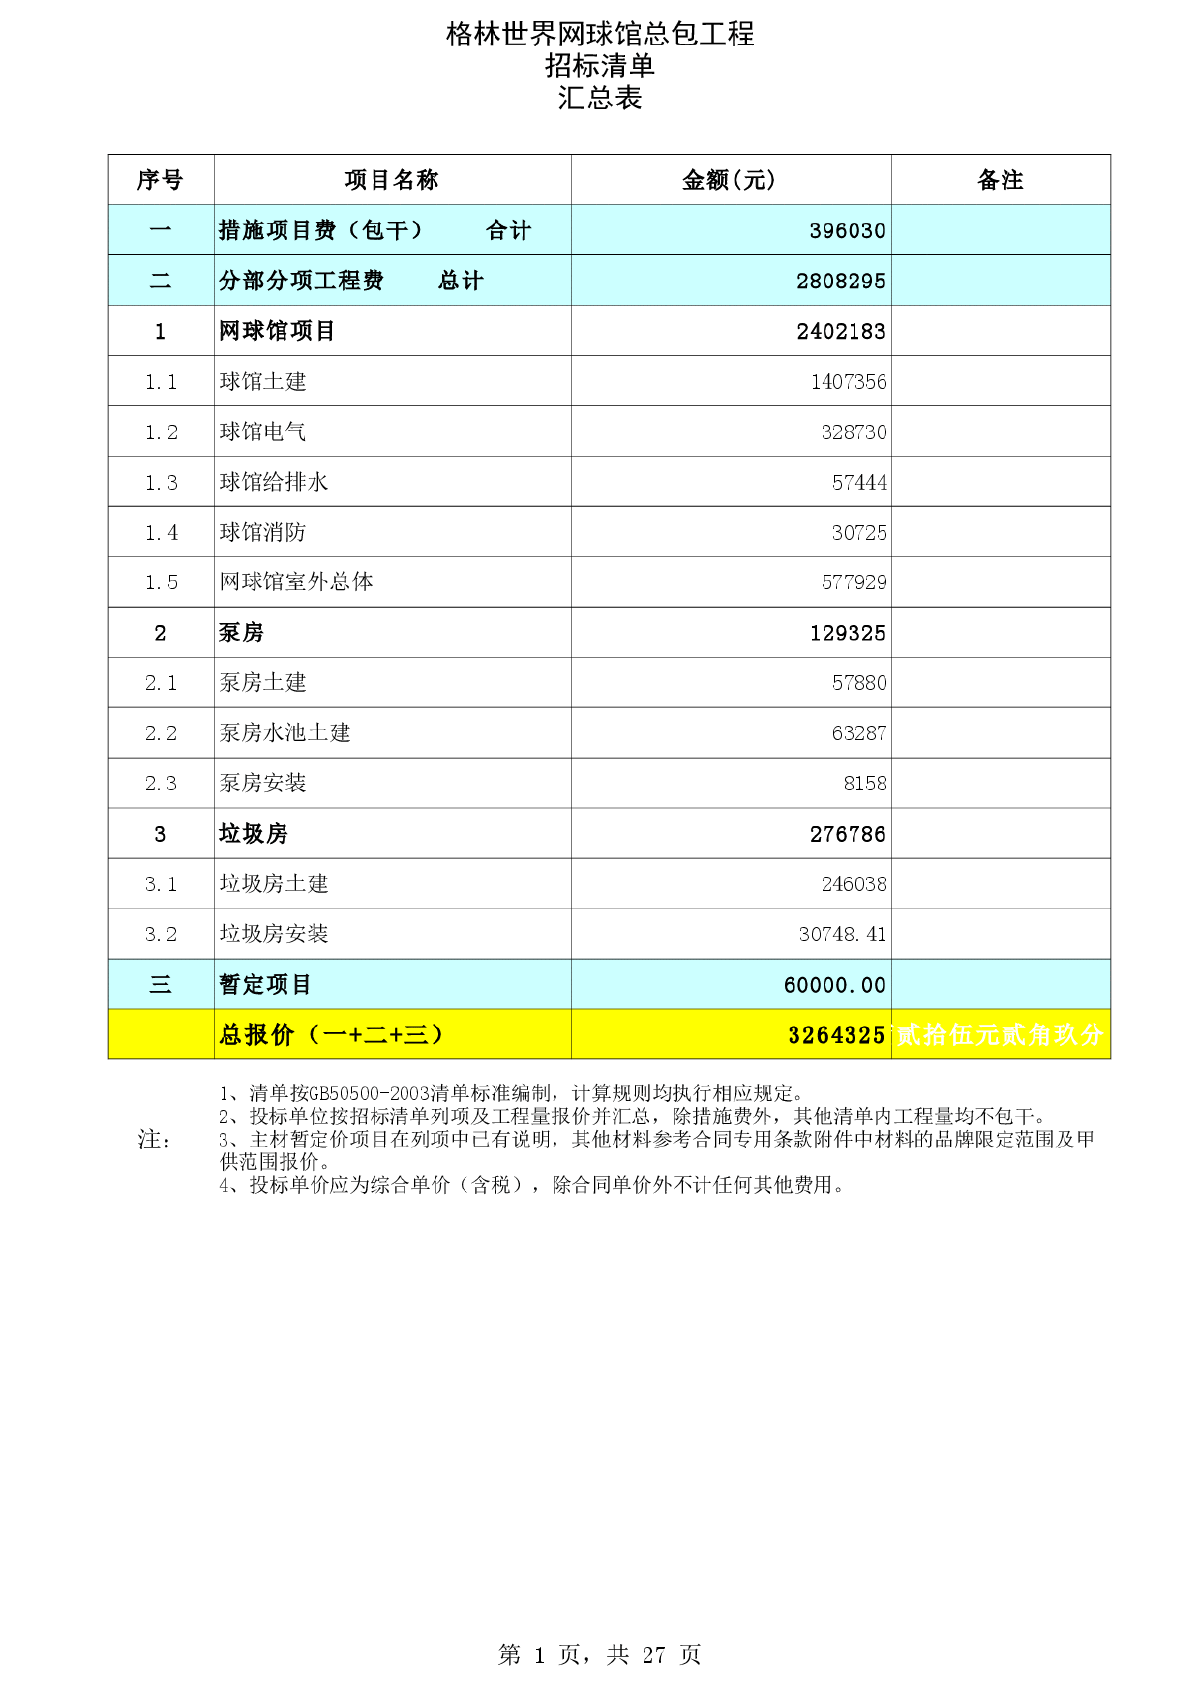 上海某项目网球馆工程商务标-网球馆总包工程招标清单9-21--合同